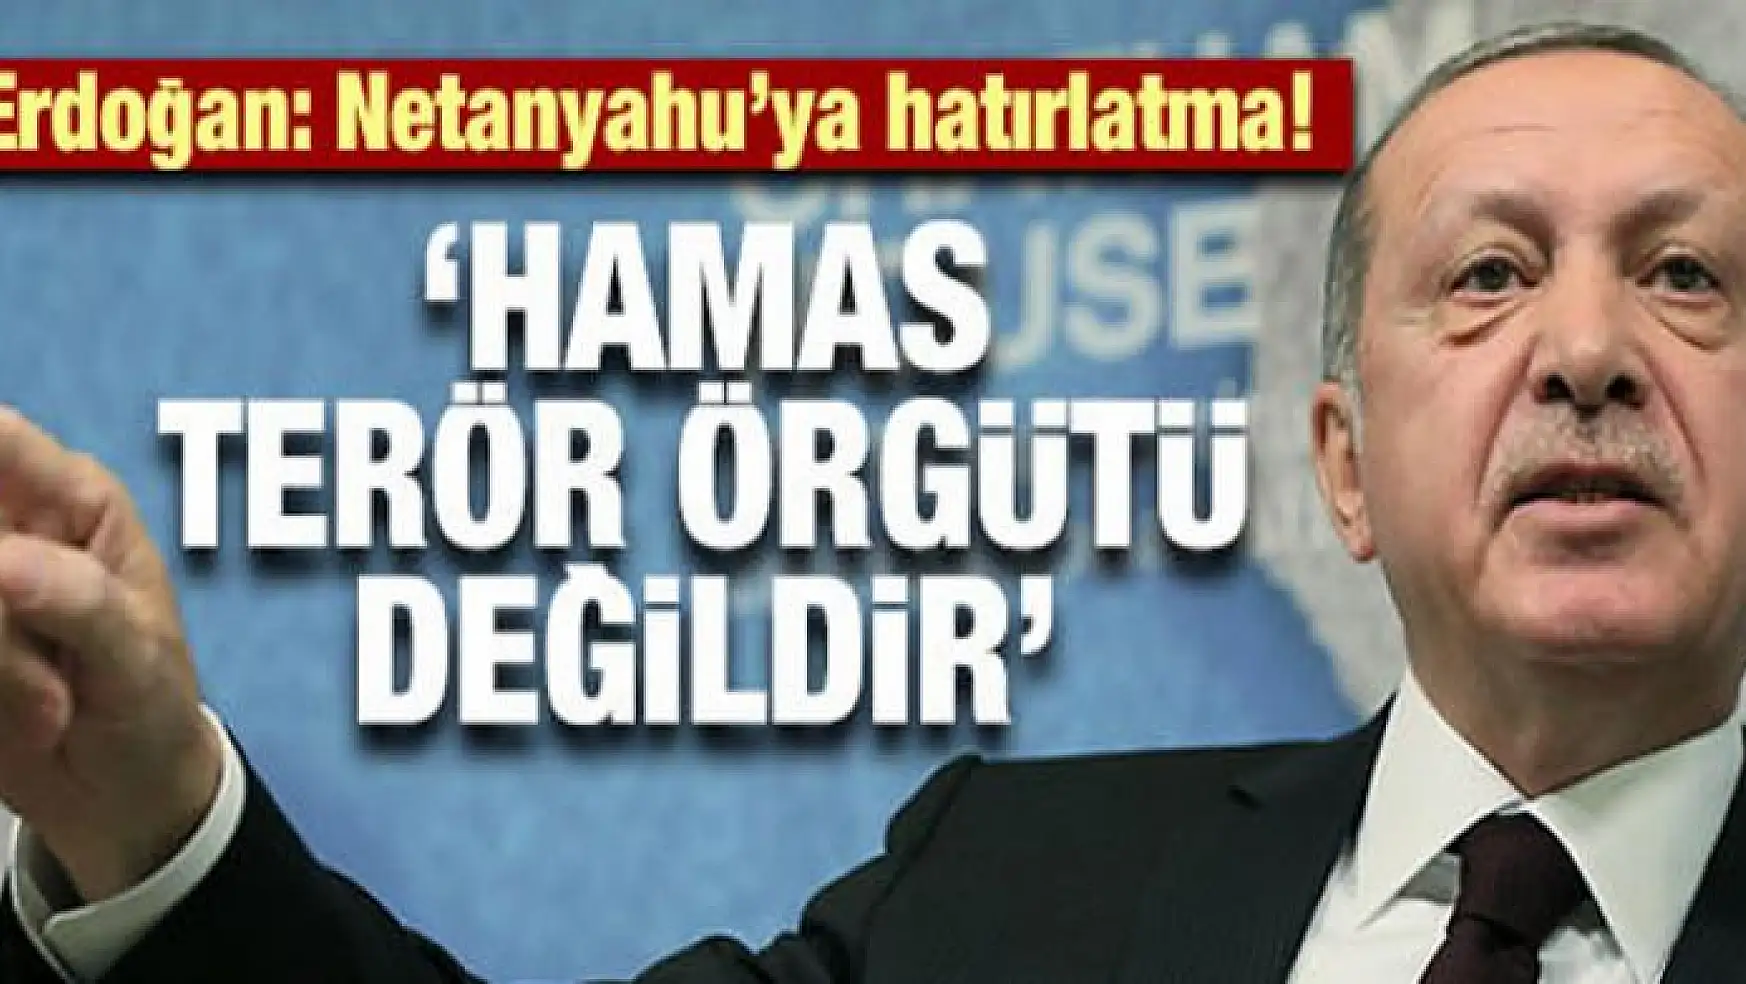 Erdoğan: 'Hamas terör örgütü değildir'